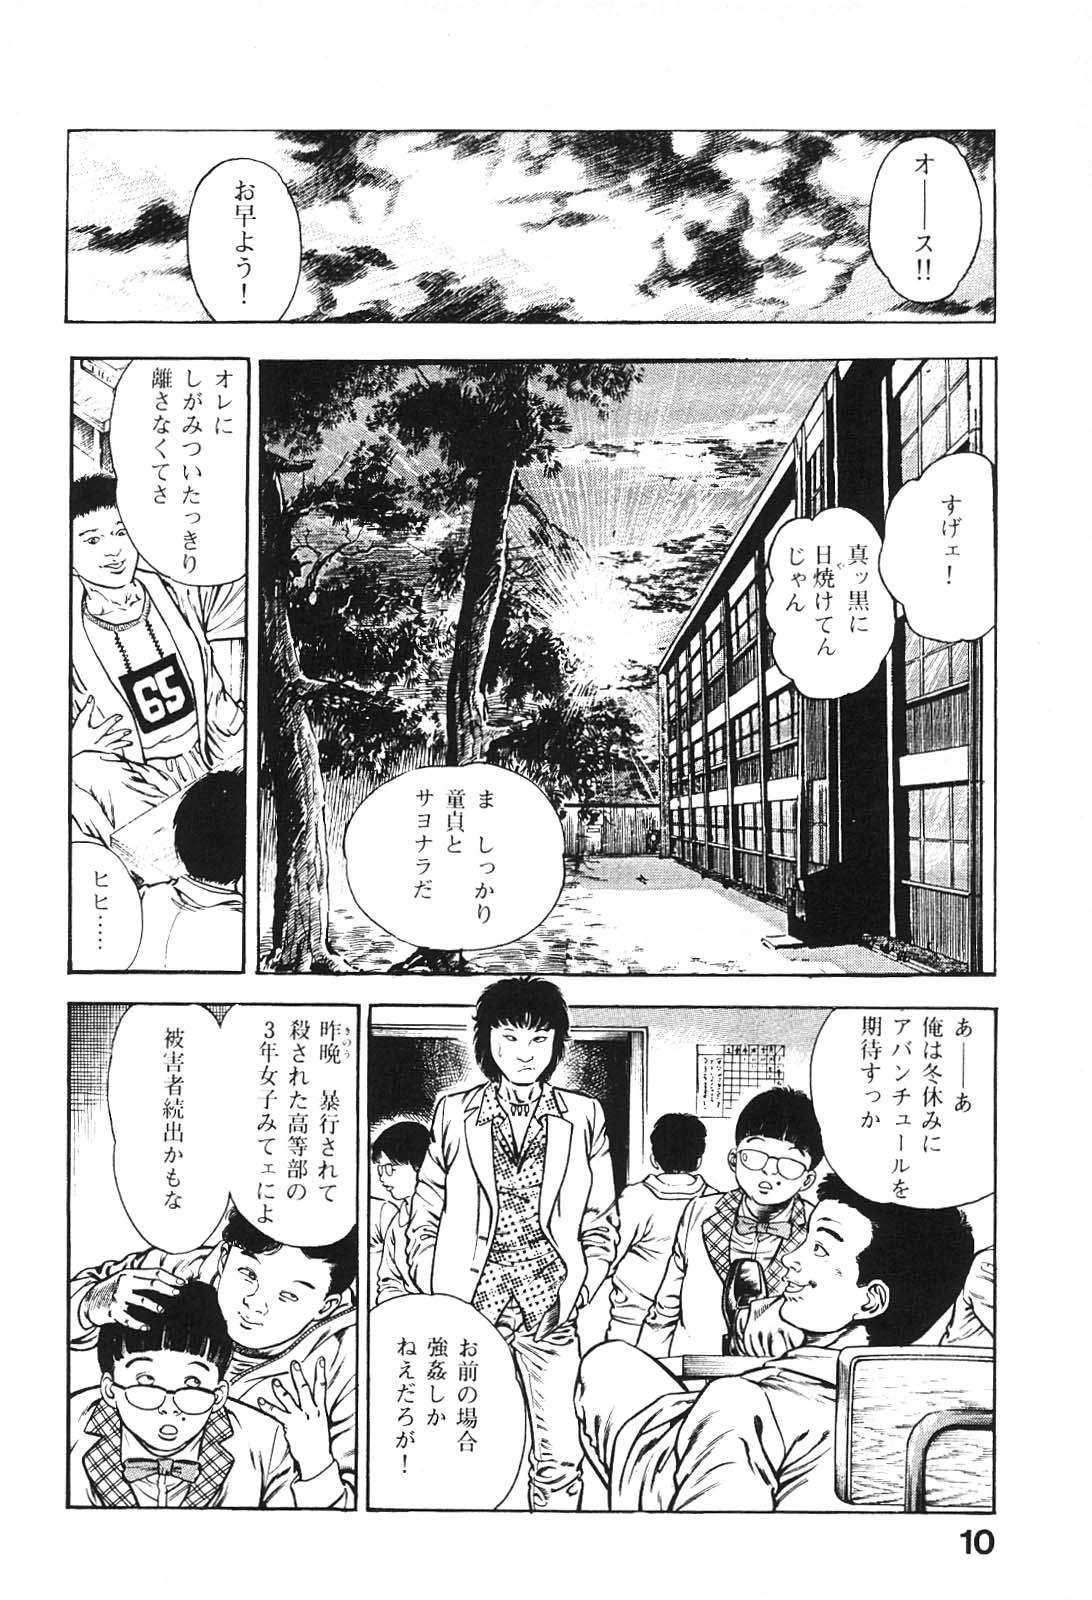 Dildo Urotsukidoji 6 Mask - Page 10